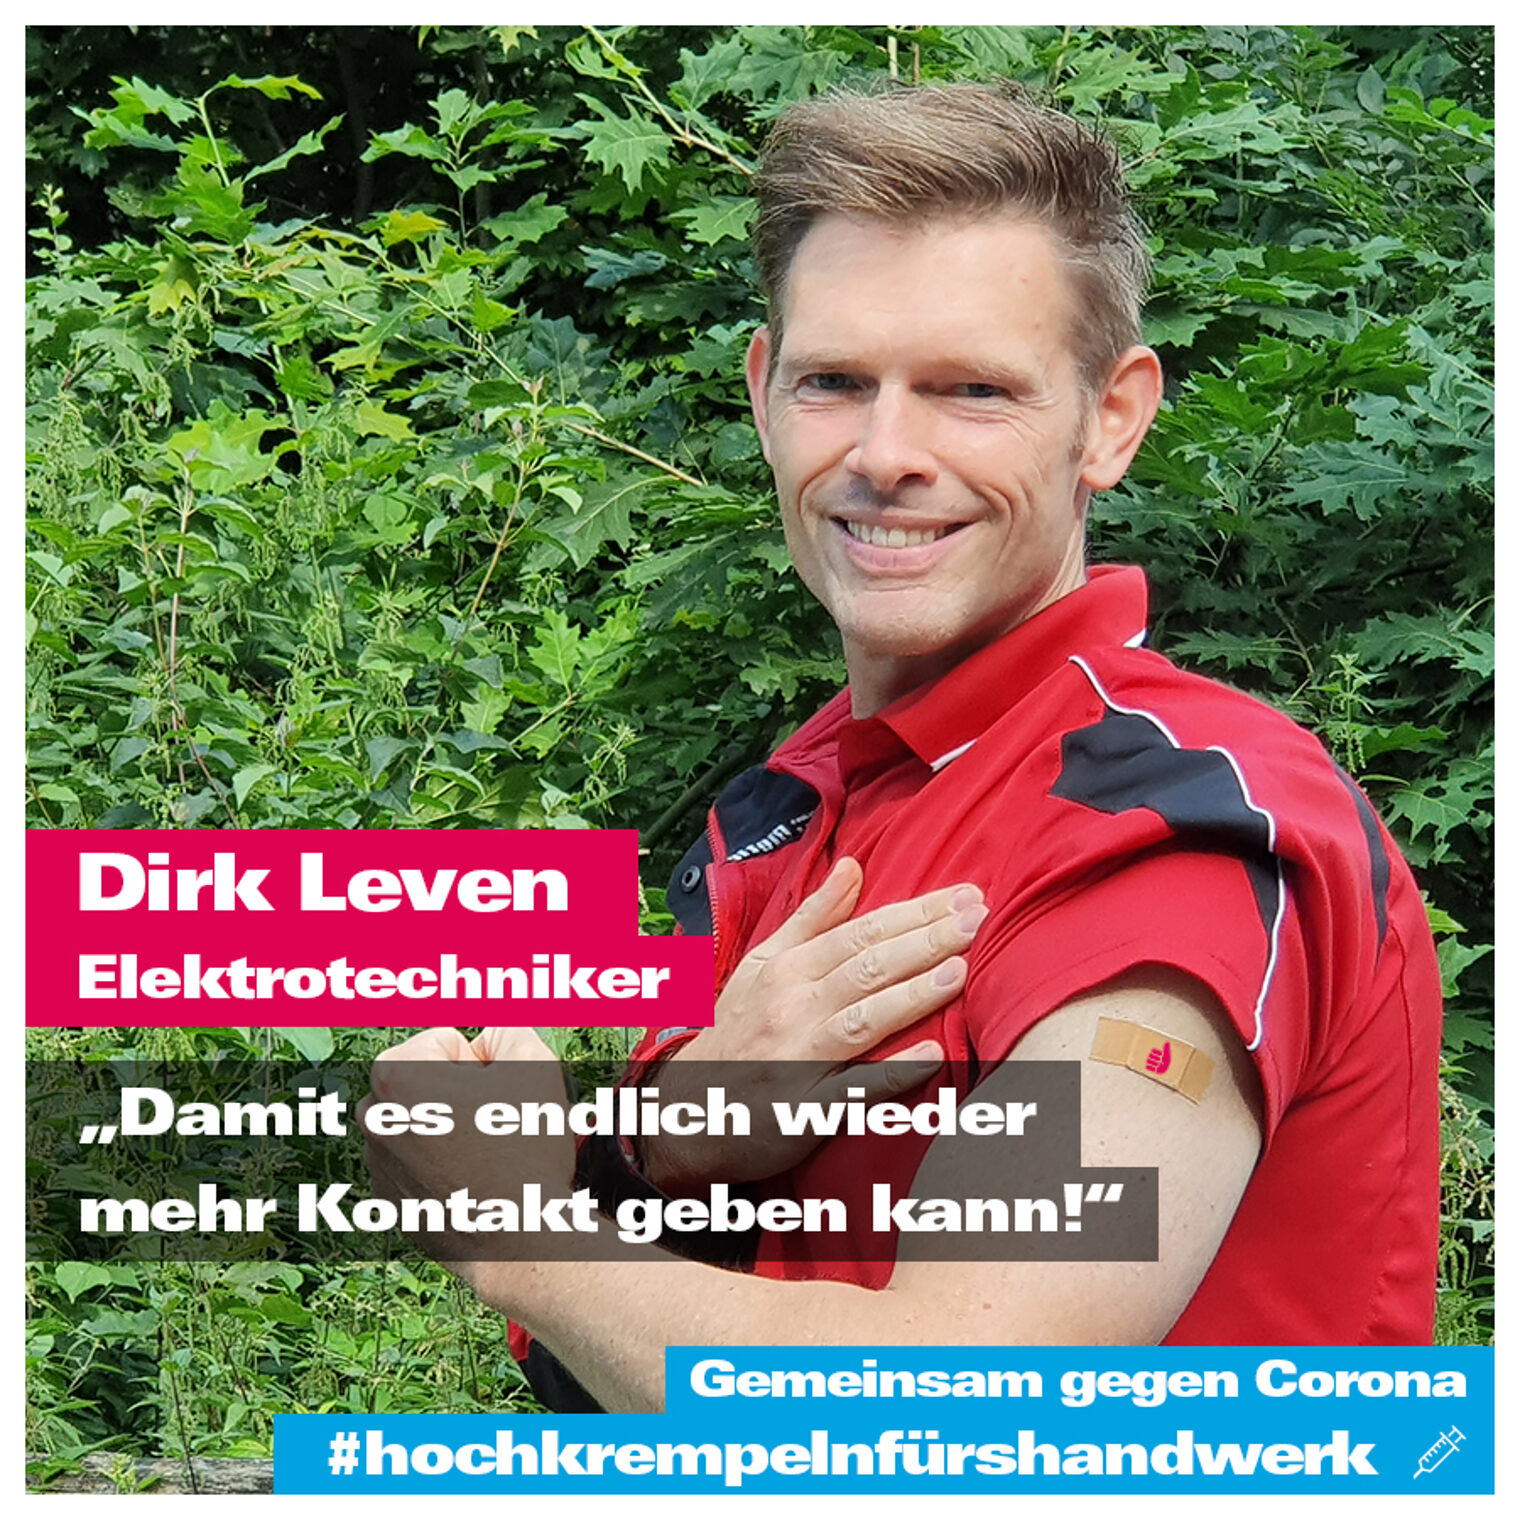 Dirk Leven zeigt, dass er sich impfen lässt.